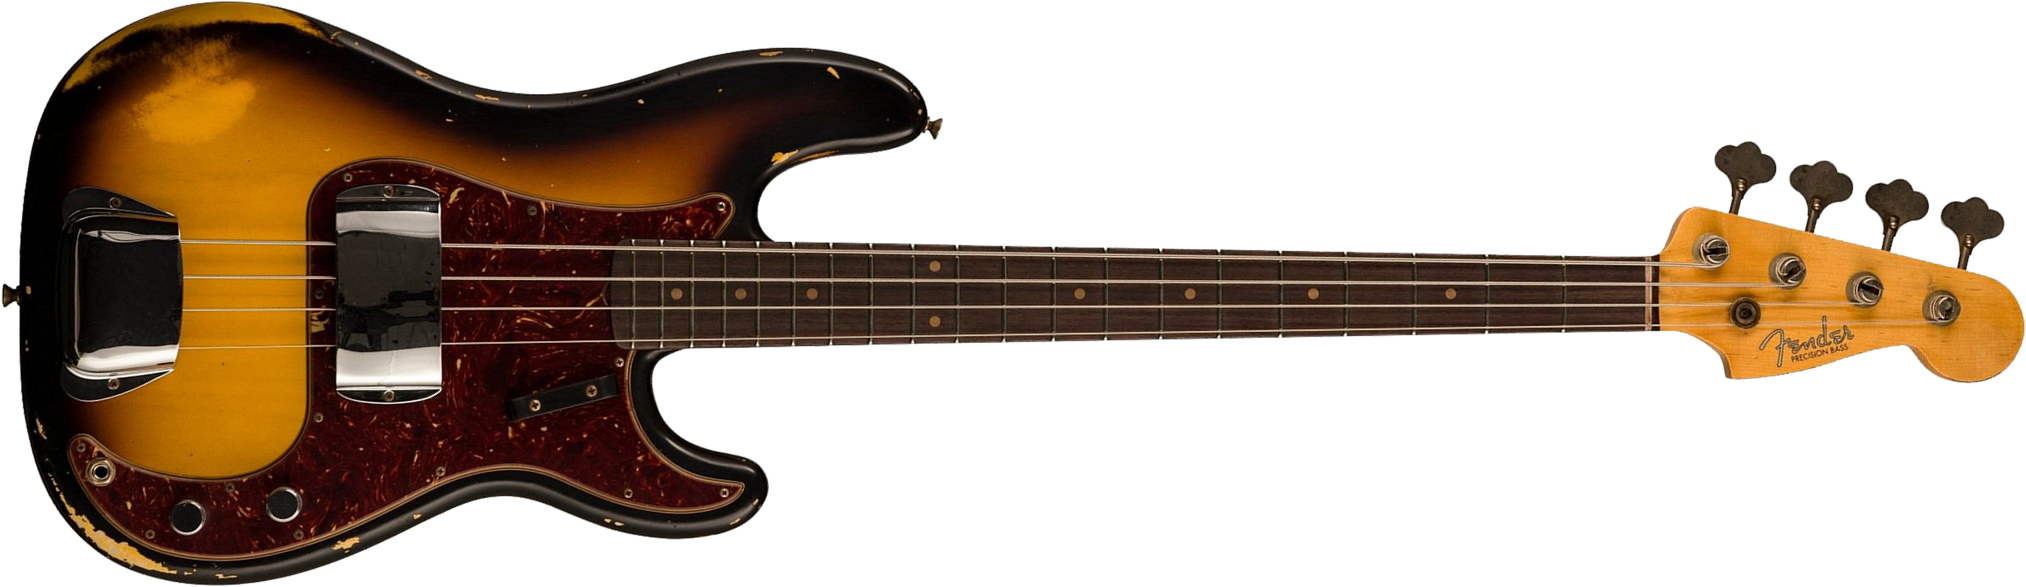 Fender Custom Shop Precision Bass 1963 Rw - Heavy Relic Aged 3-color Sunburst - Basse Électrique Solid Body - Main picture